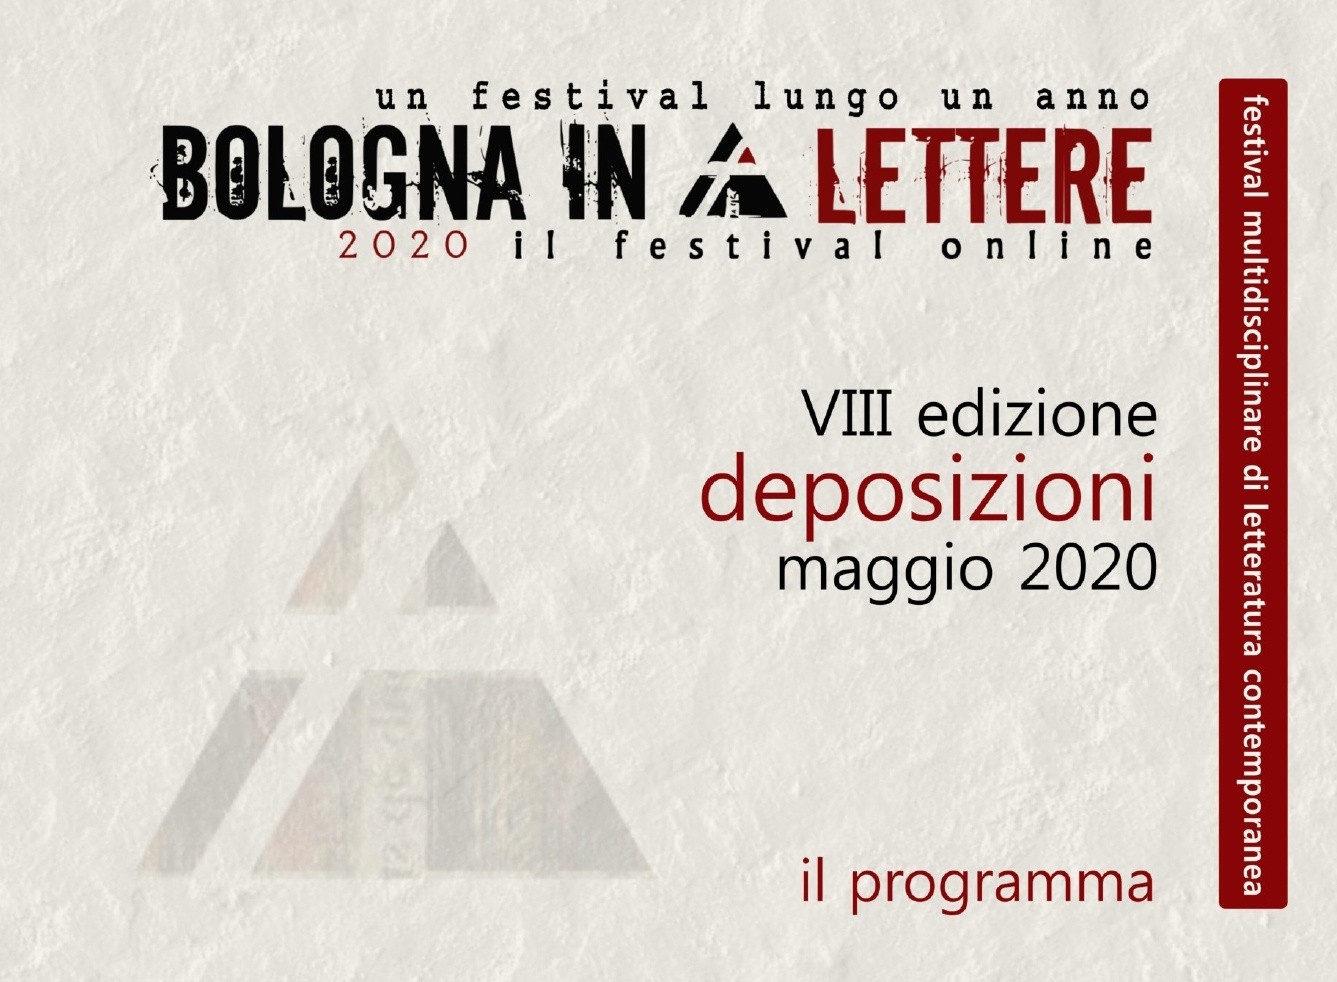 Al momento stai visualizzando Bologna in Lettere 2020